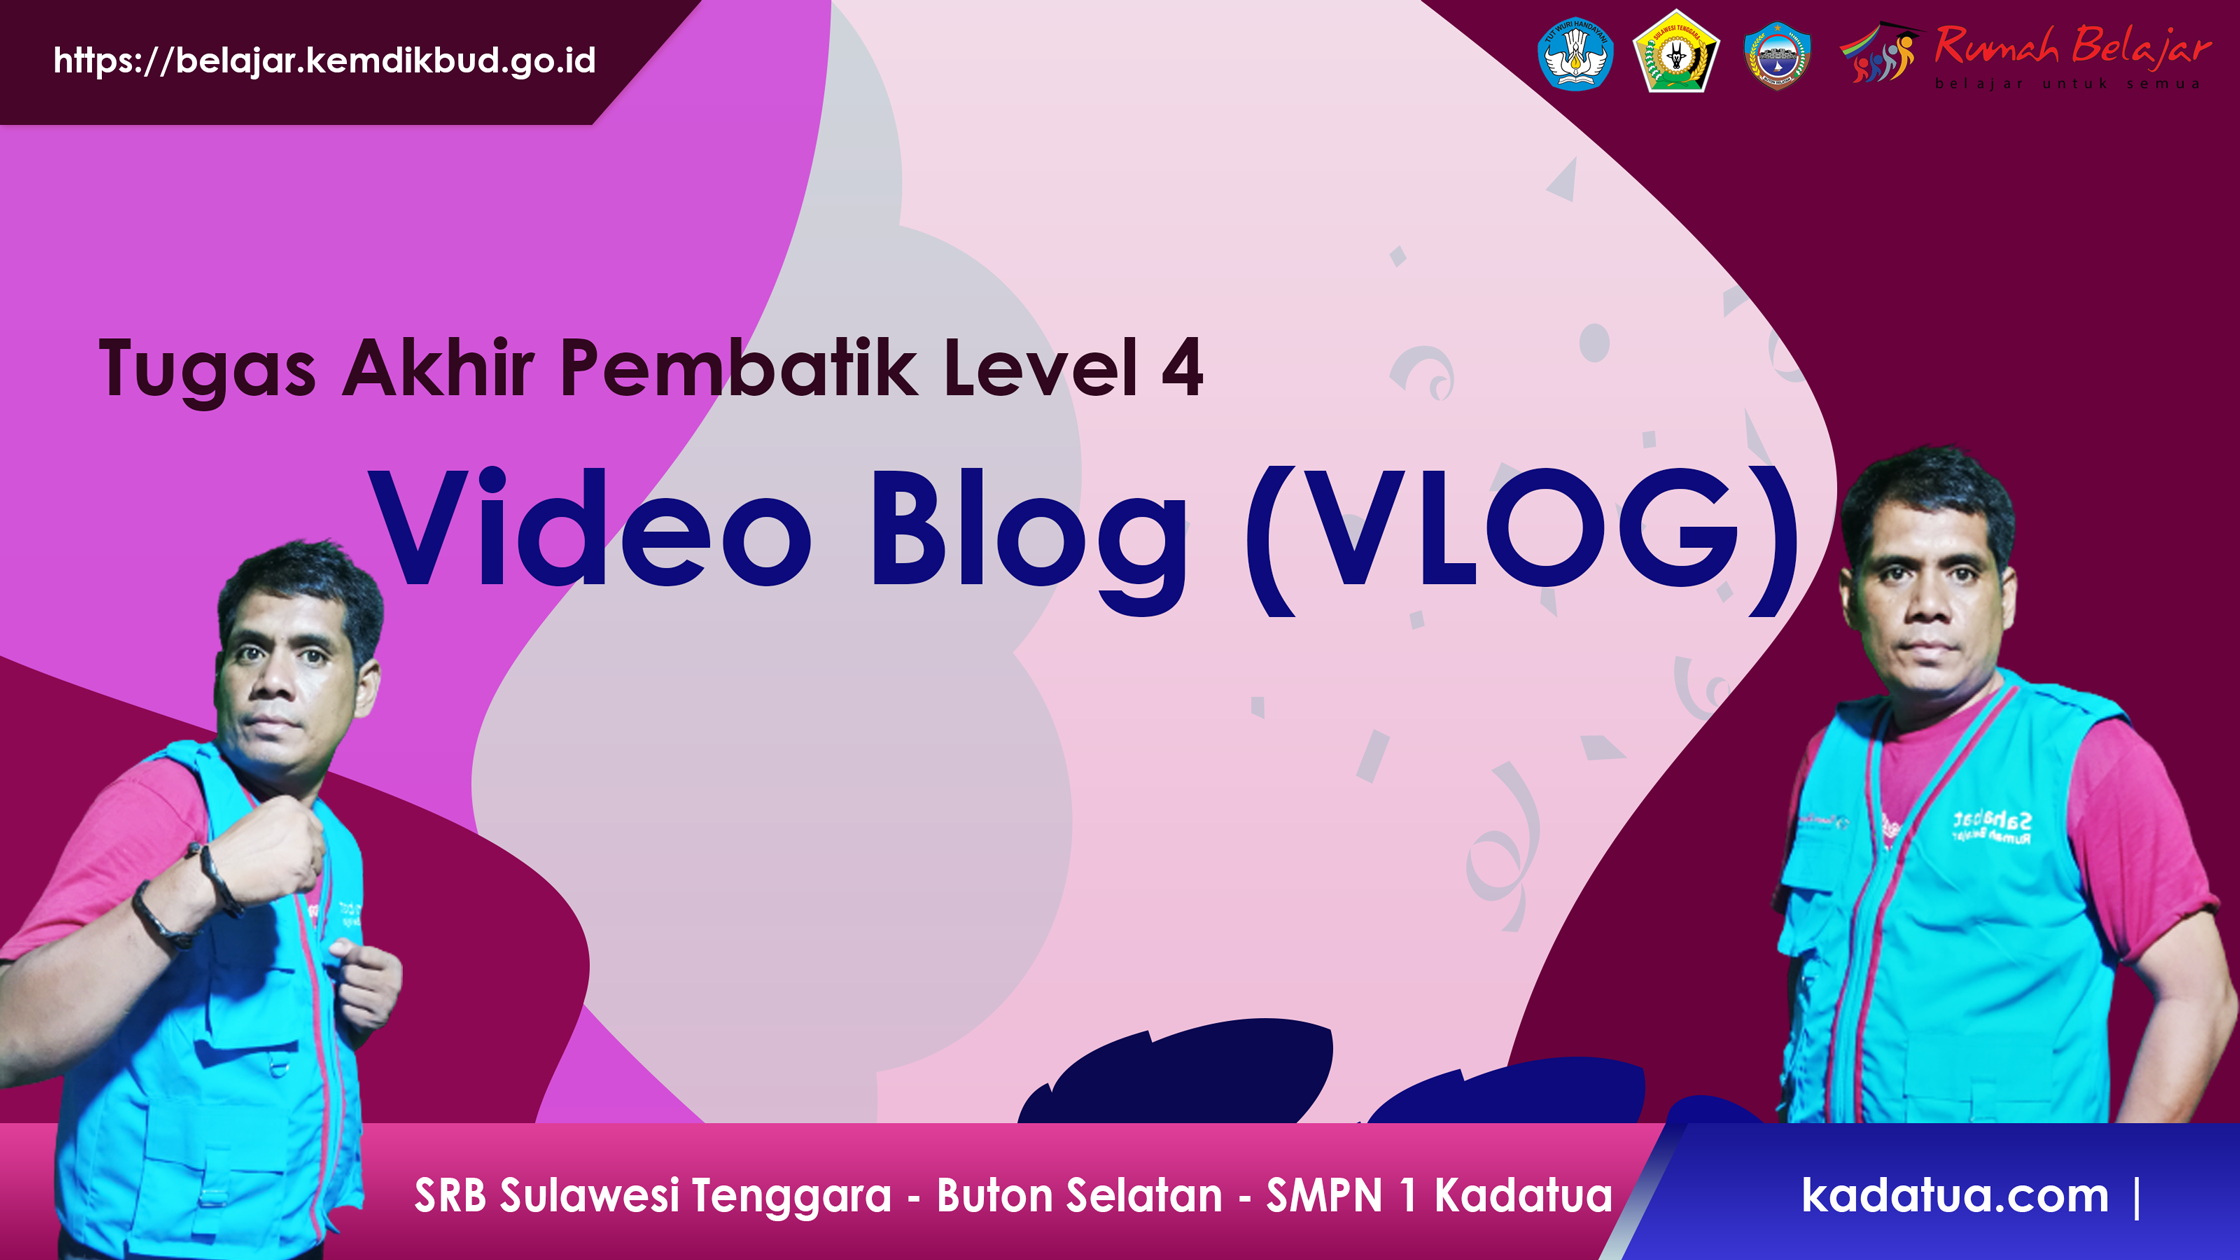 Video Blog Tugas Pembatik Level 4 Tahun 2021